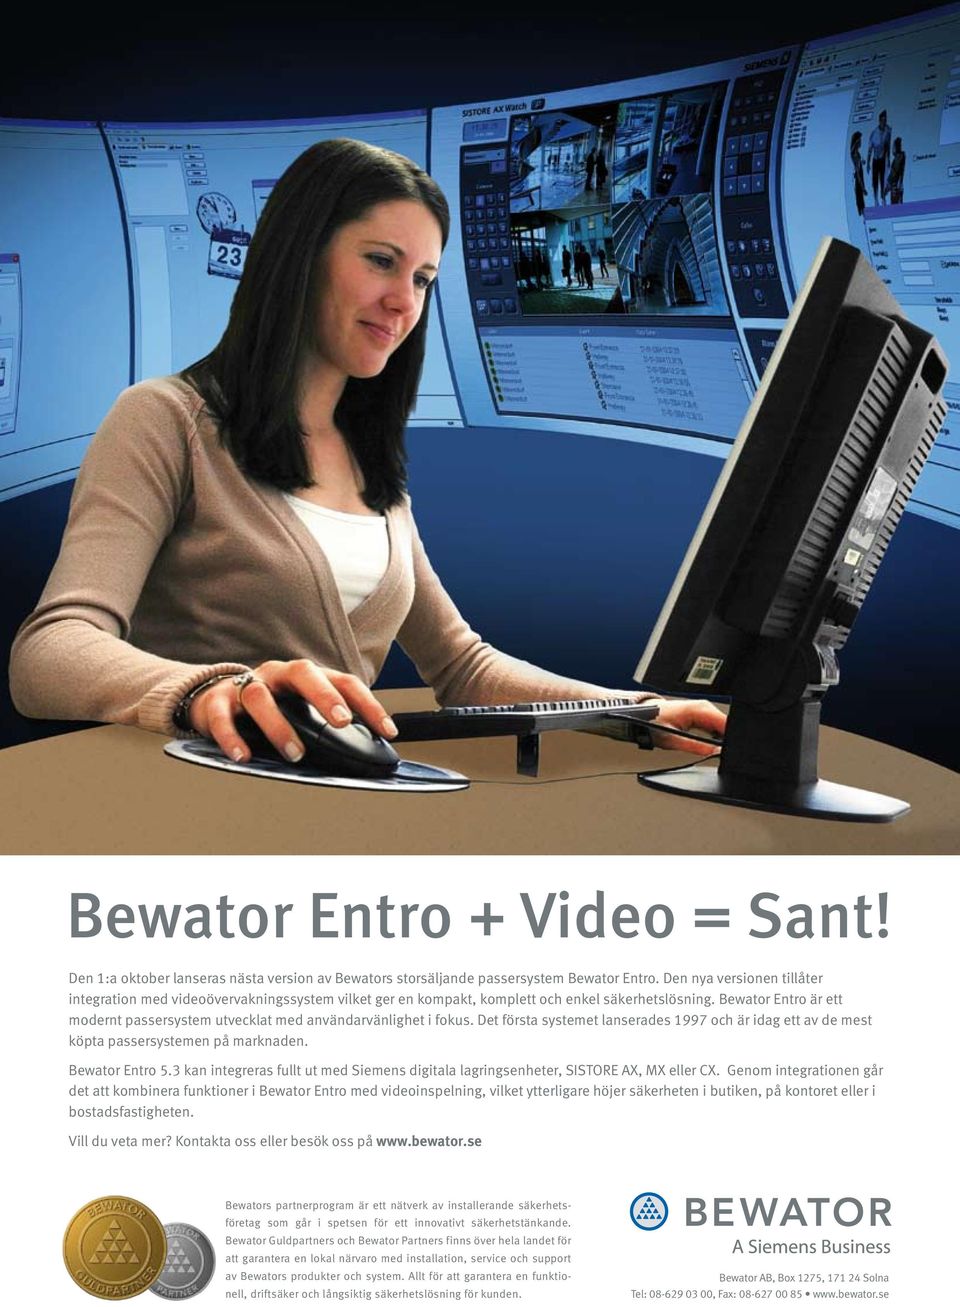 Bewator Entro är ett modernt passersystem utvecklat med användarvänlighet i fokus. Det första systemet lanserades 1997 och är idag ett av de mest köpta passersystemen på marknaden. Bewator Entro 5.